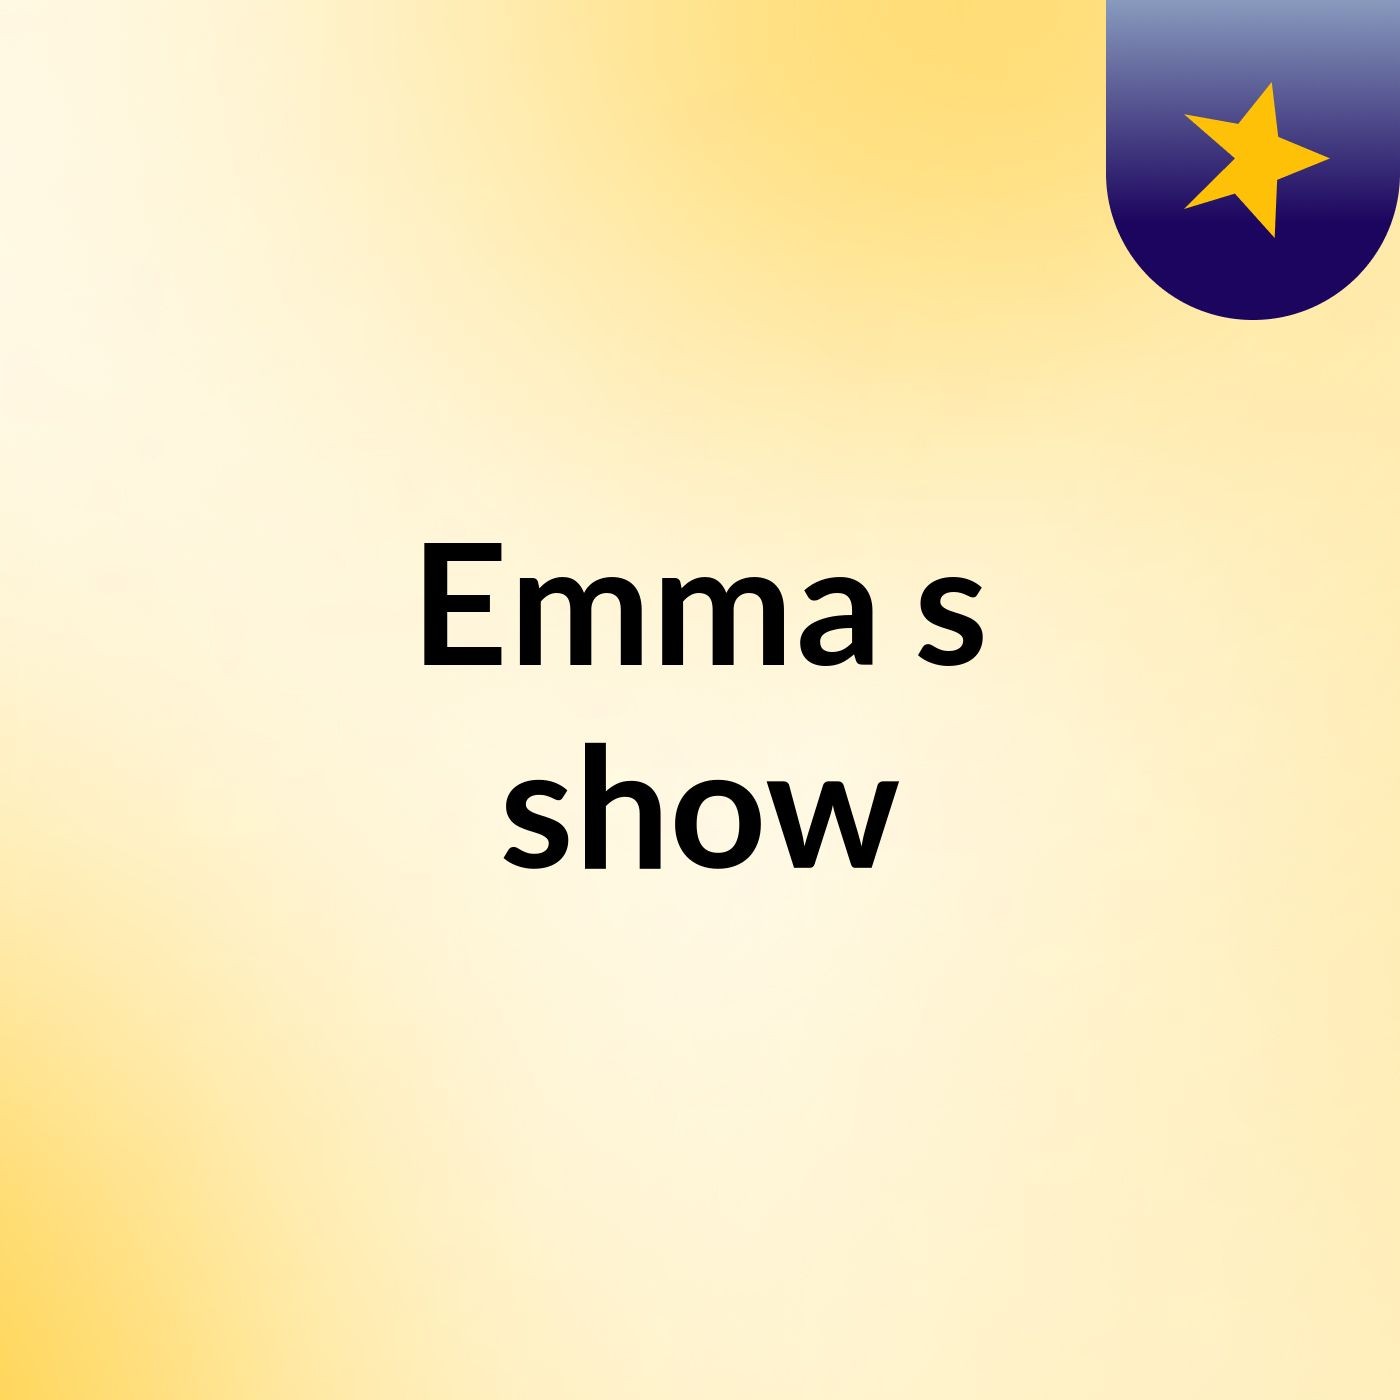 Emma's show